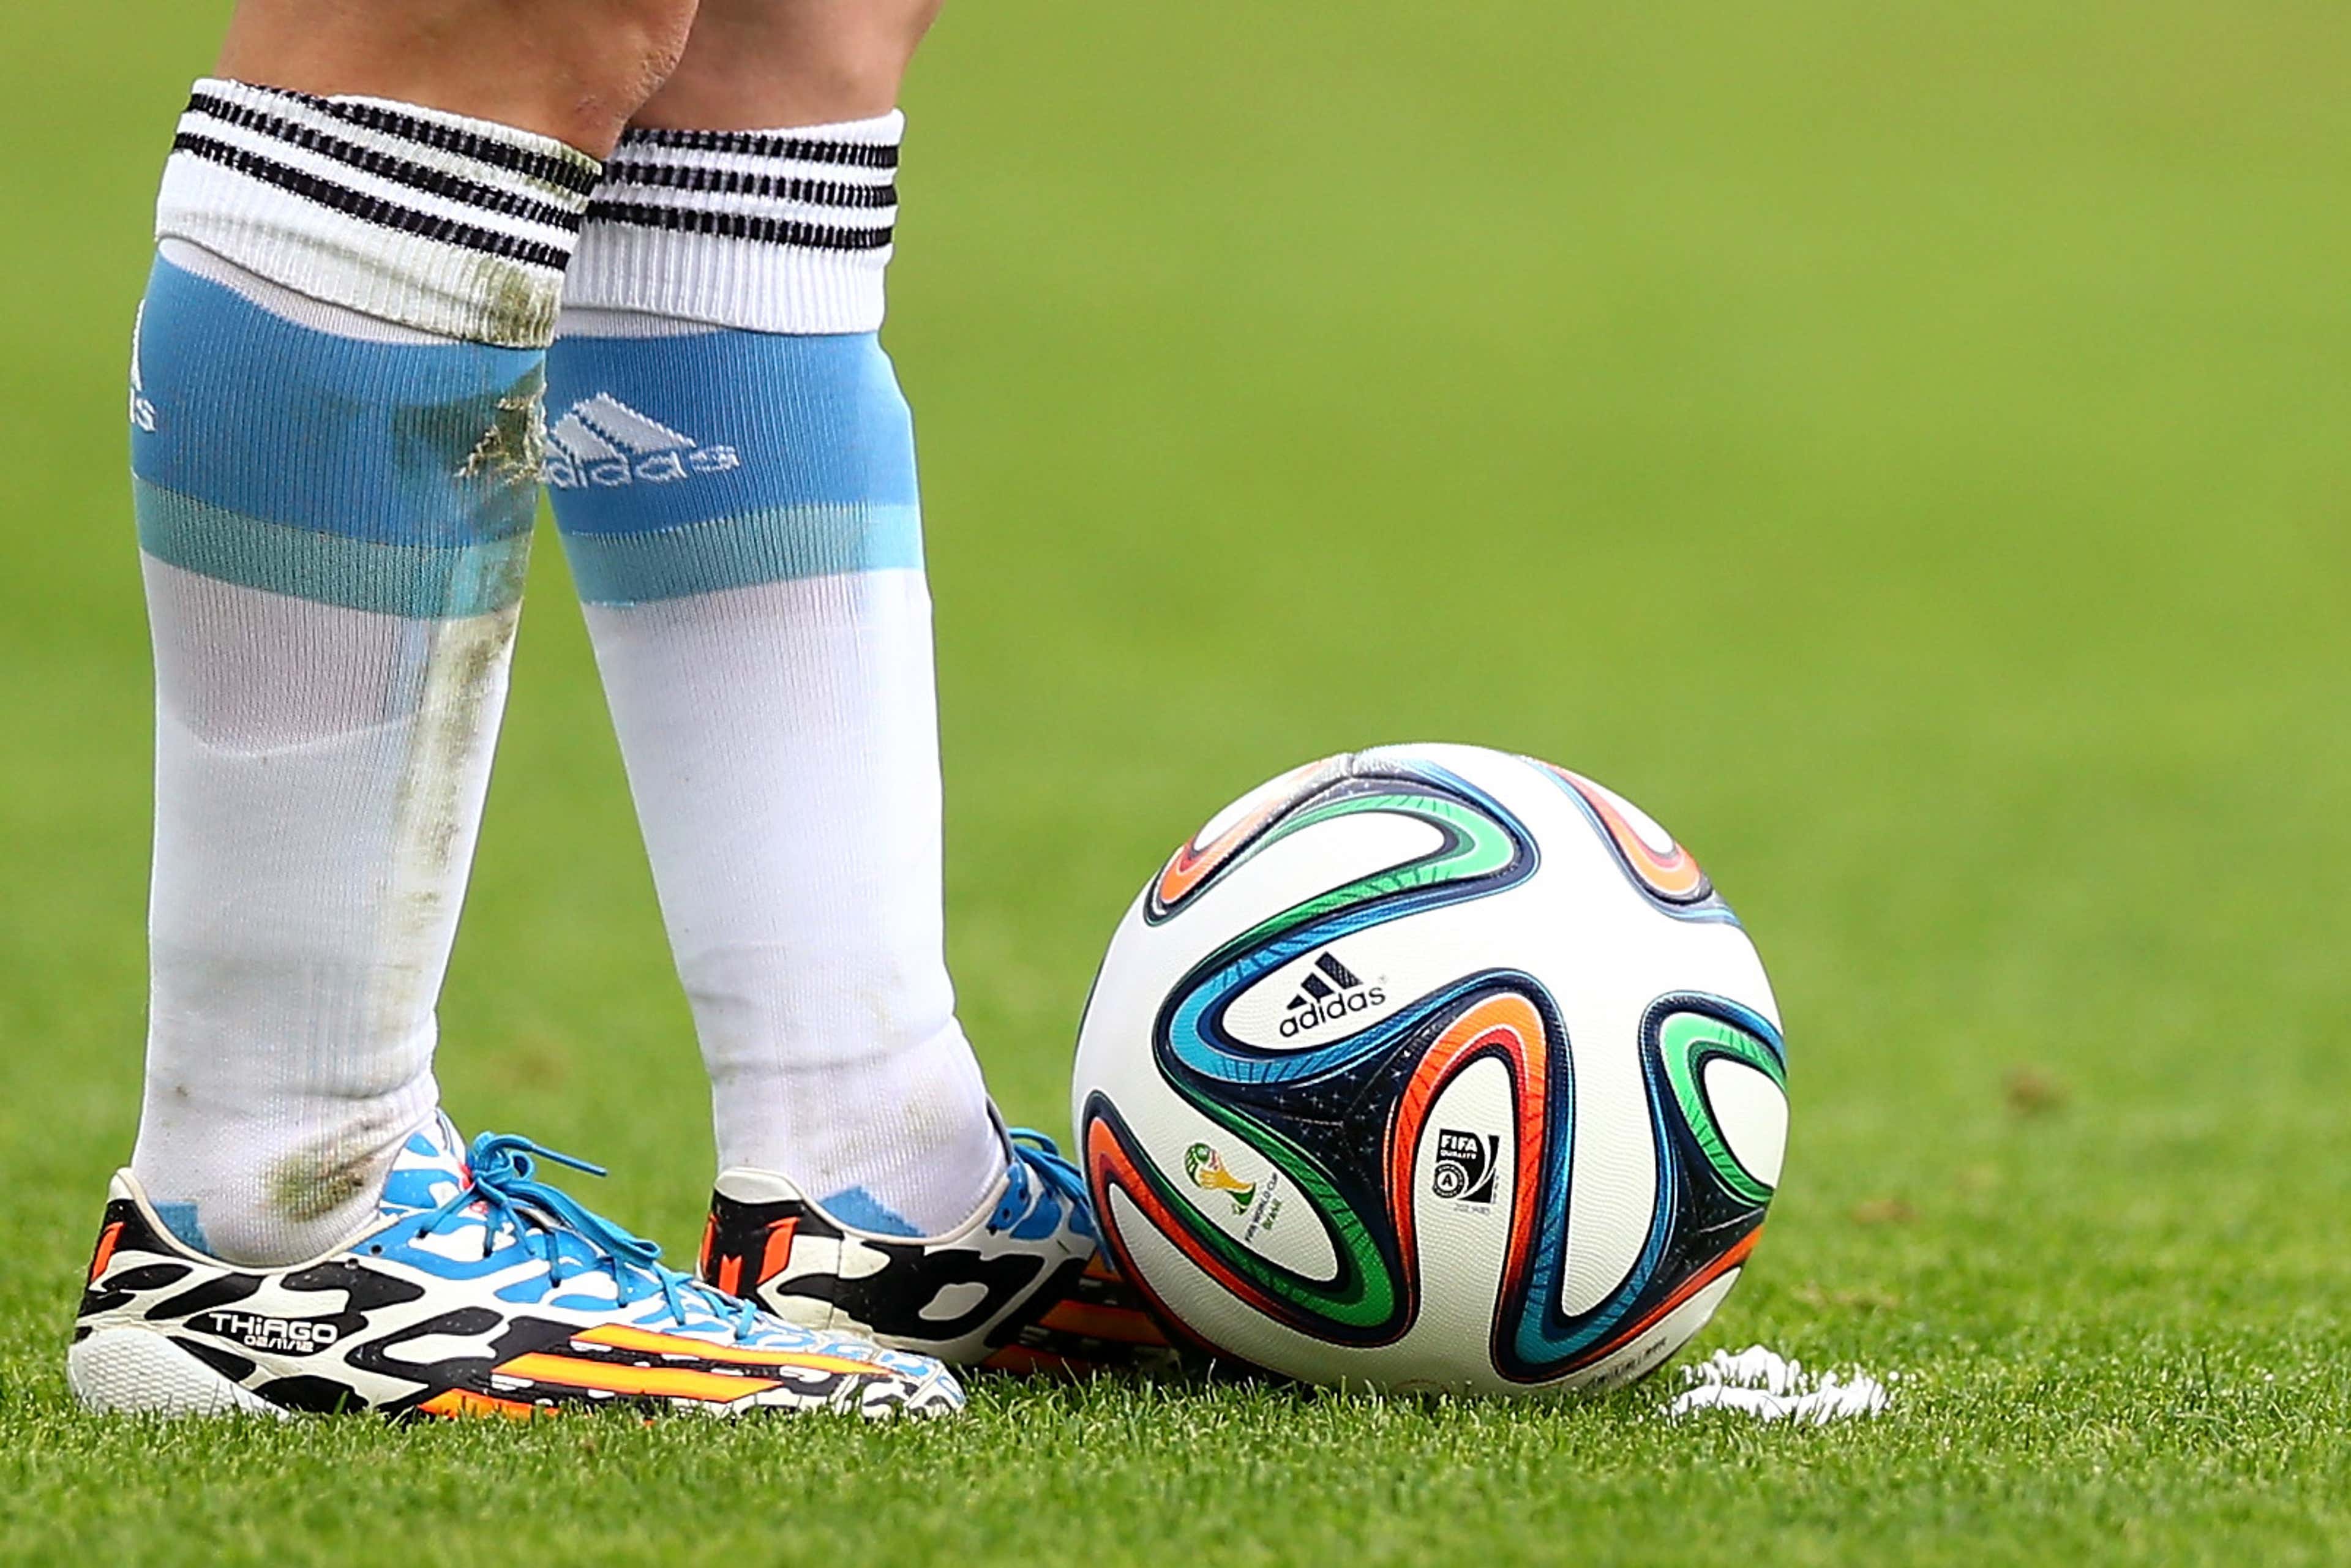 Bola oficial do Mundial de Clubes é apresentada pela Fifa antes do